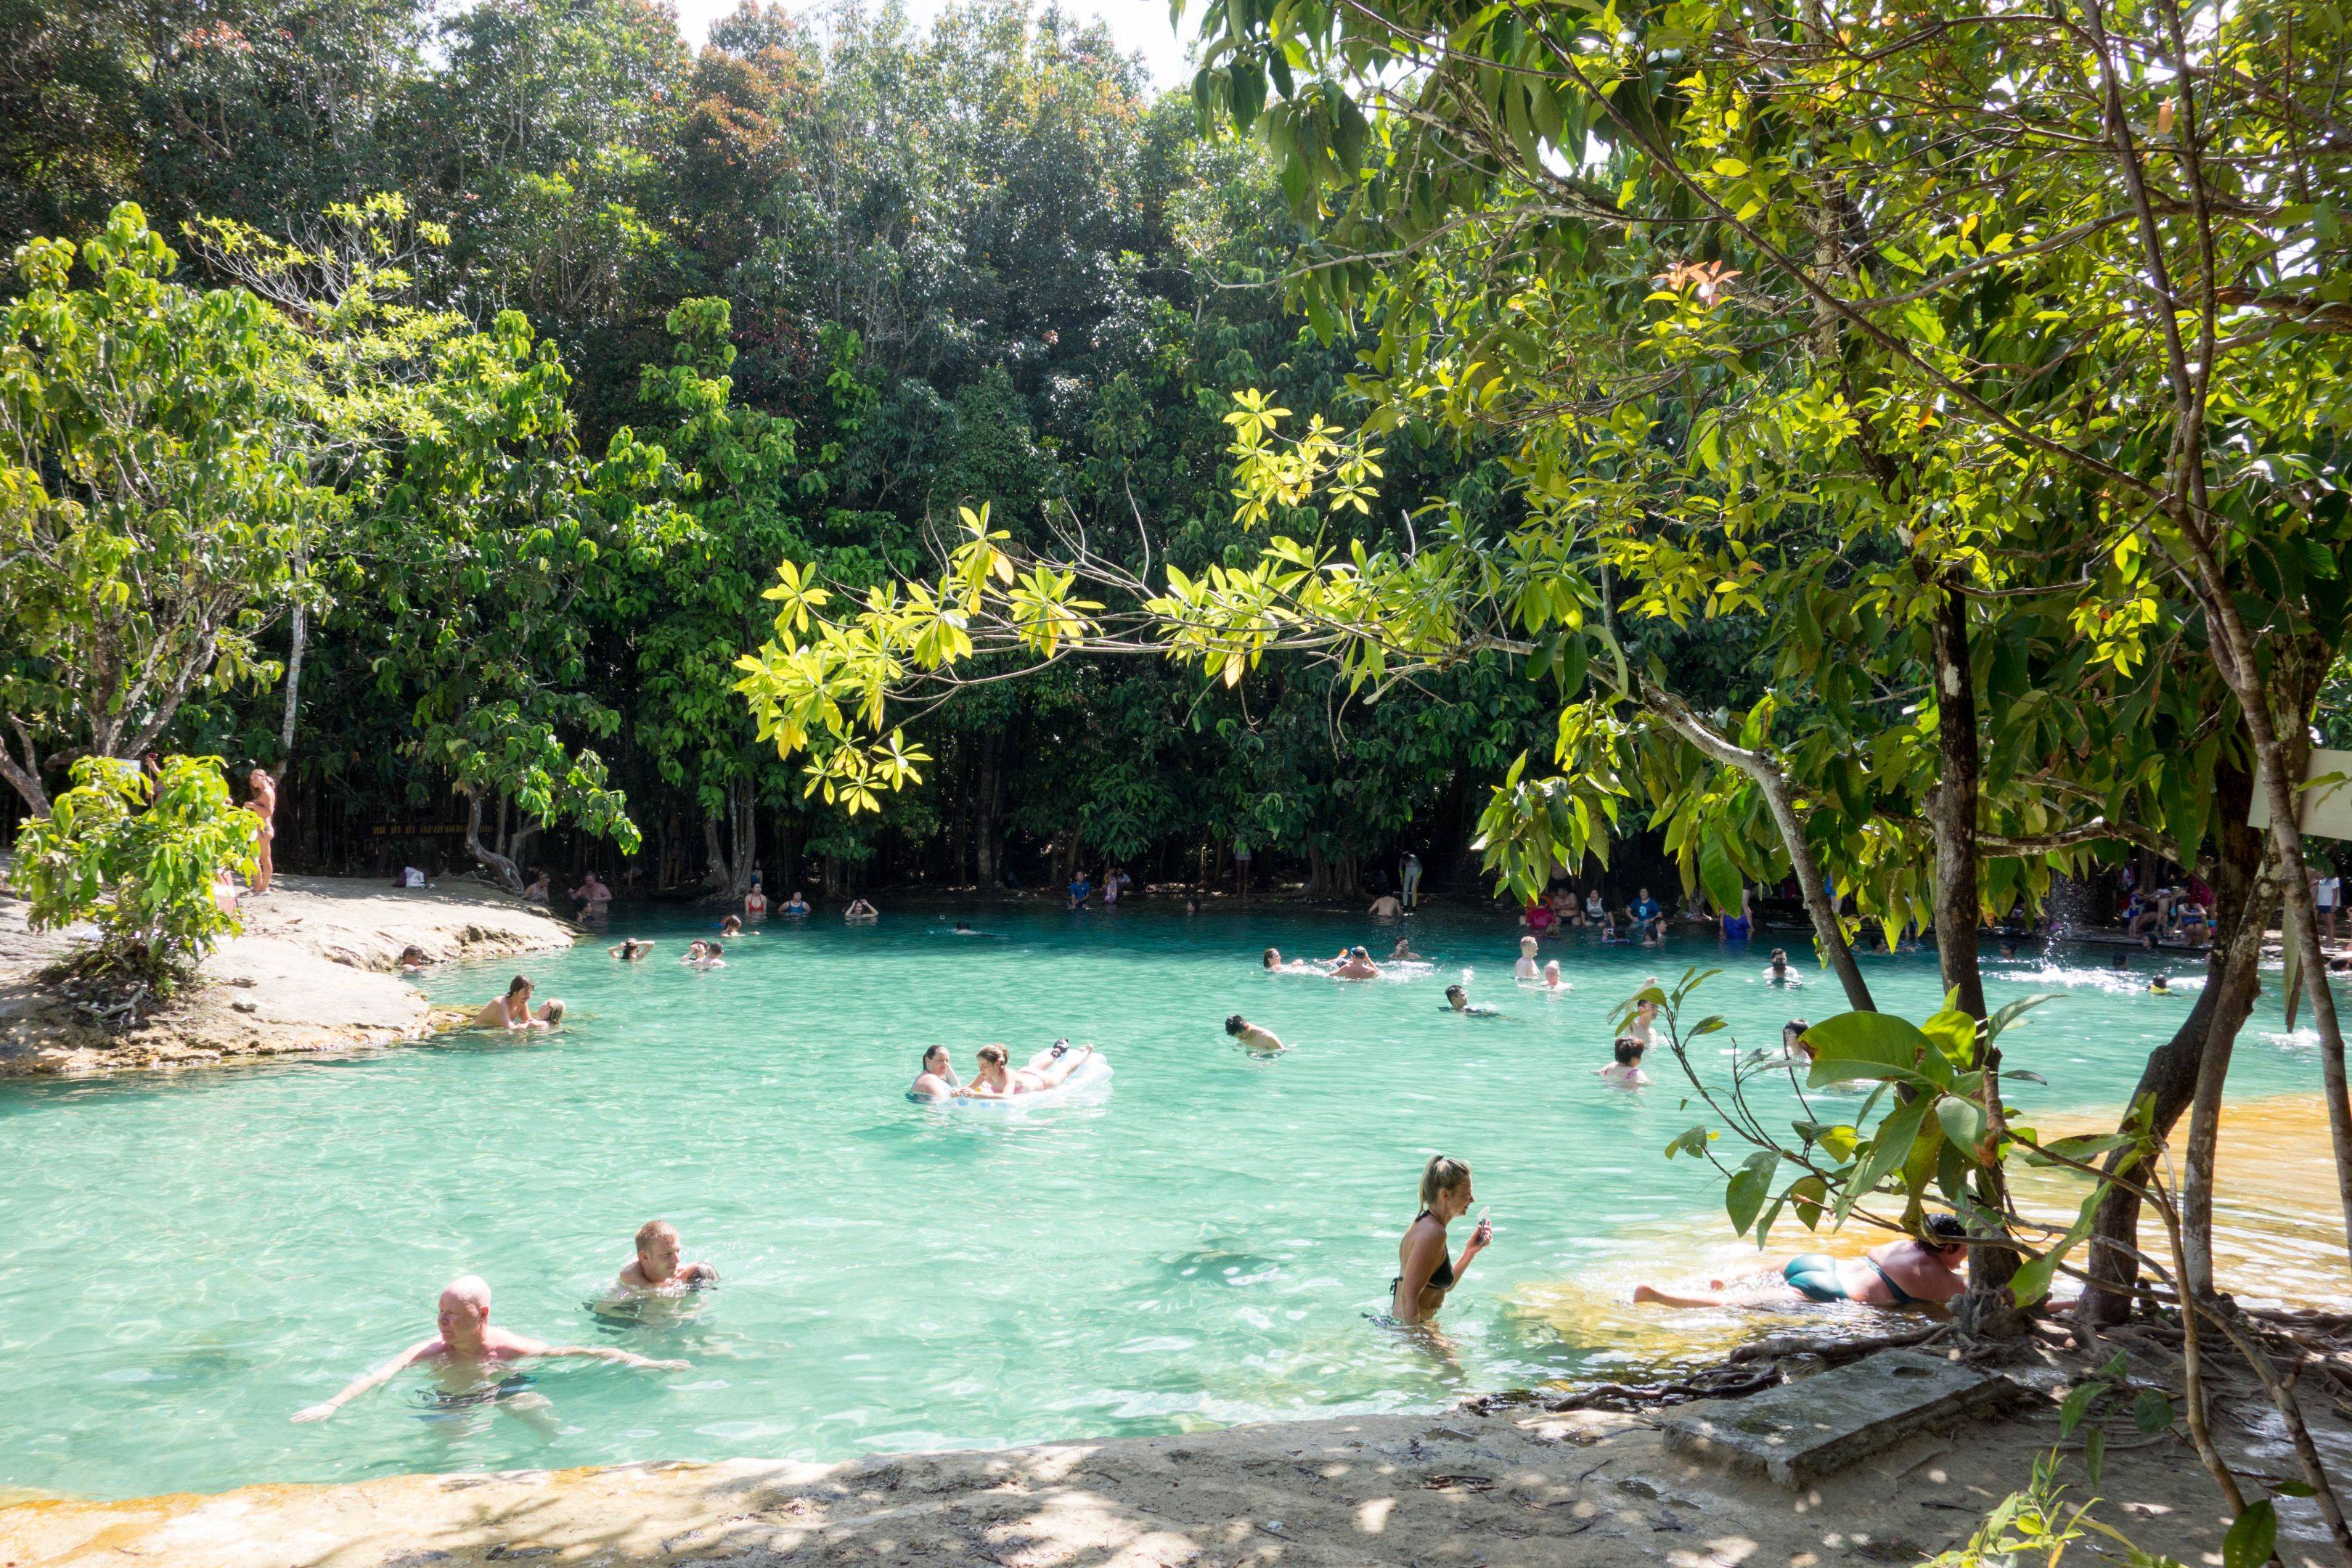 Krabi: piscinas naturales y zonas termales en plena jungla nos esperan. Emerald pool, blue pool y hot springs, escenarios increíbles en plena selva.